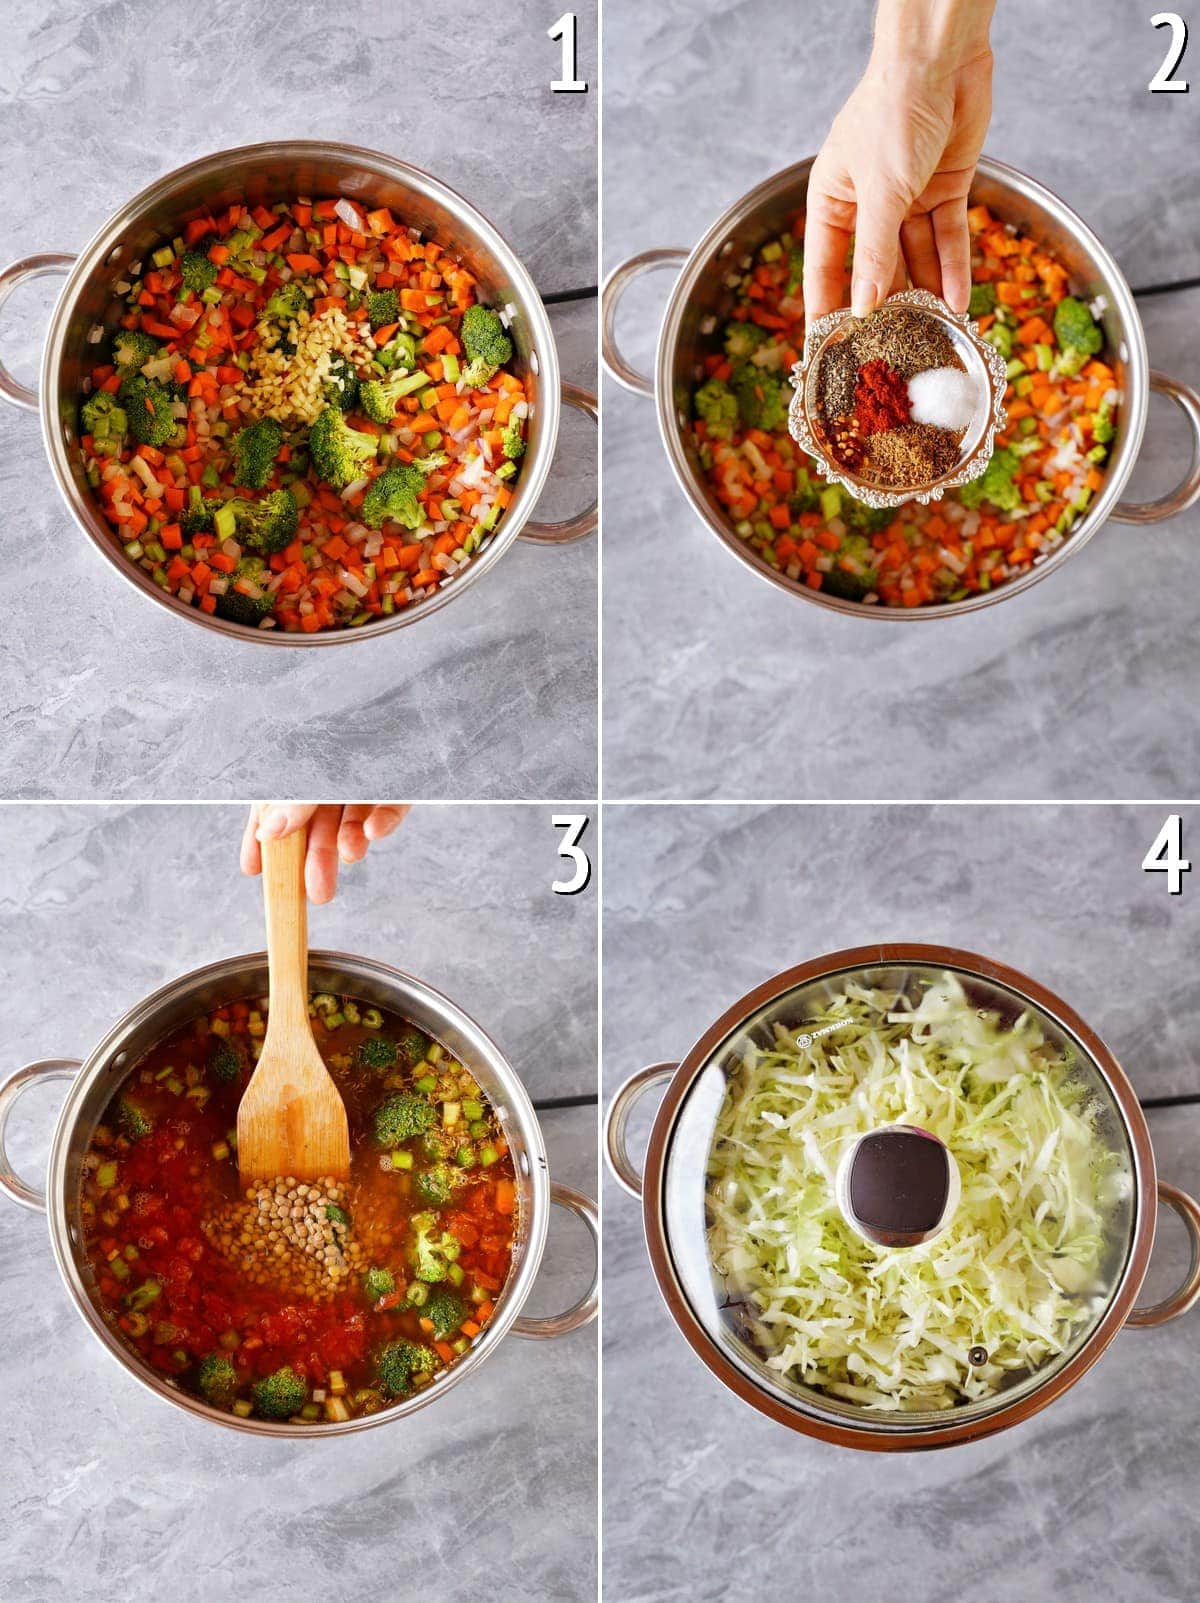 4 Schritt-für-Schritt-Bilder der Zubereitung eines Gemüse-Kohl-Eintopfs